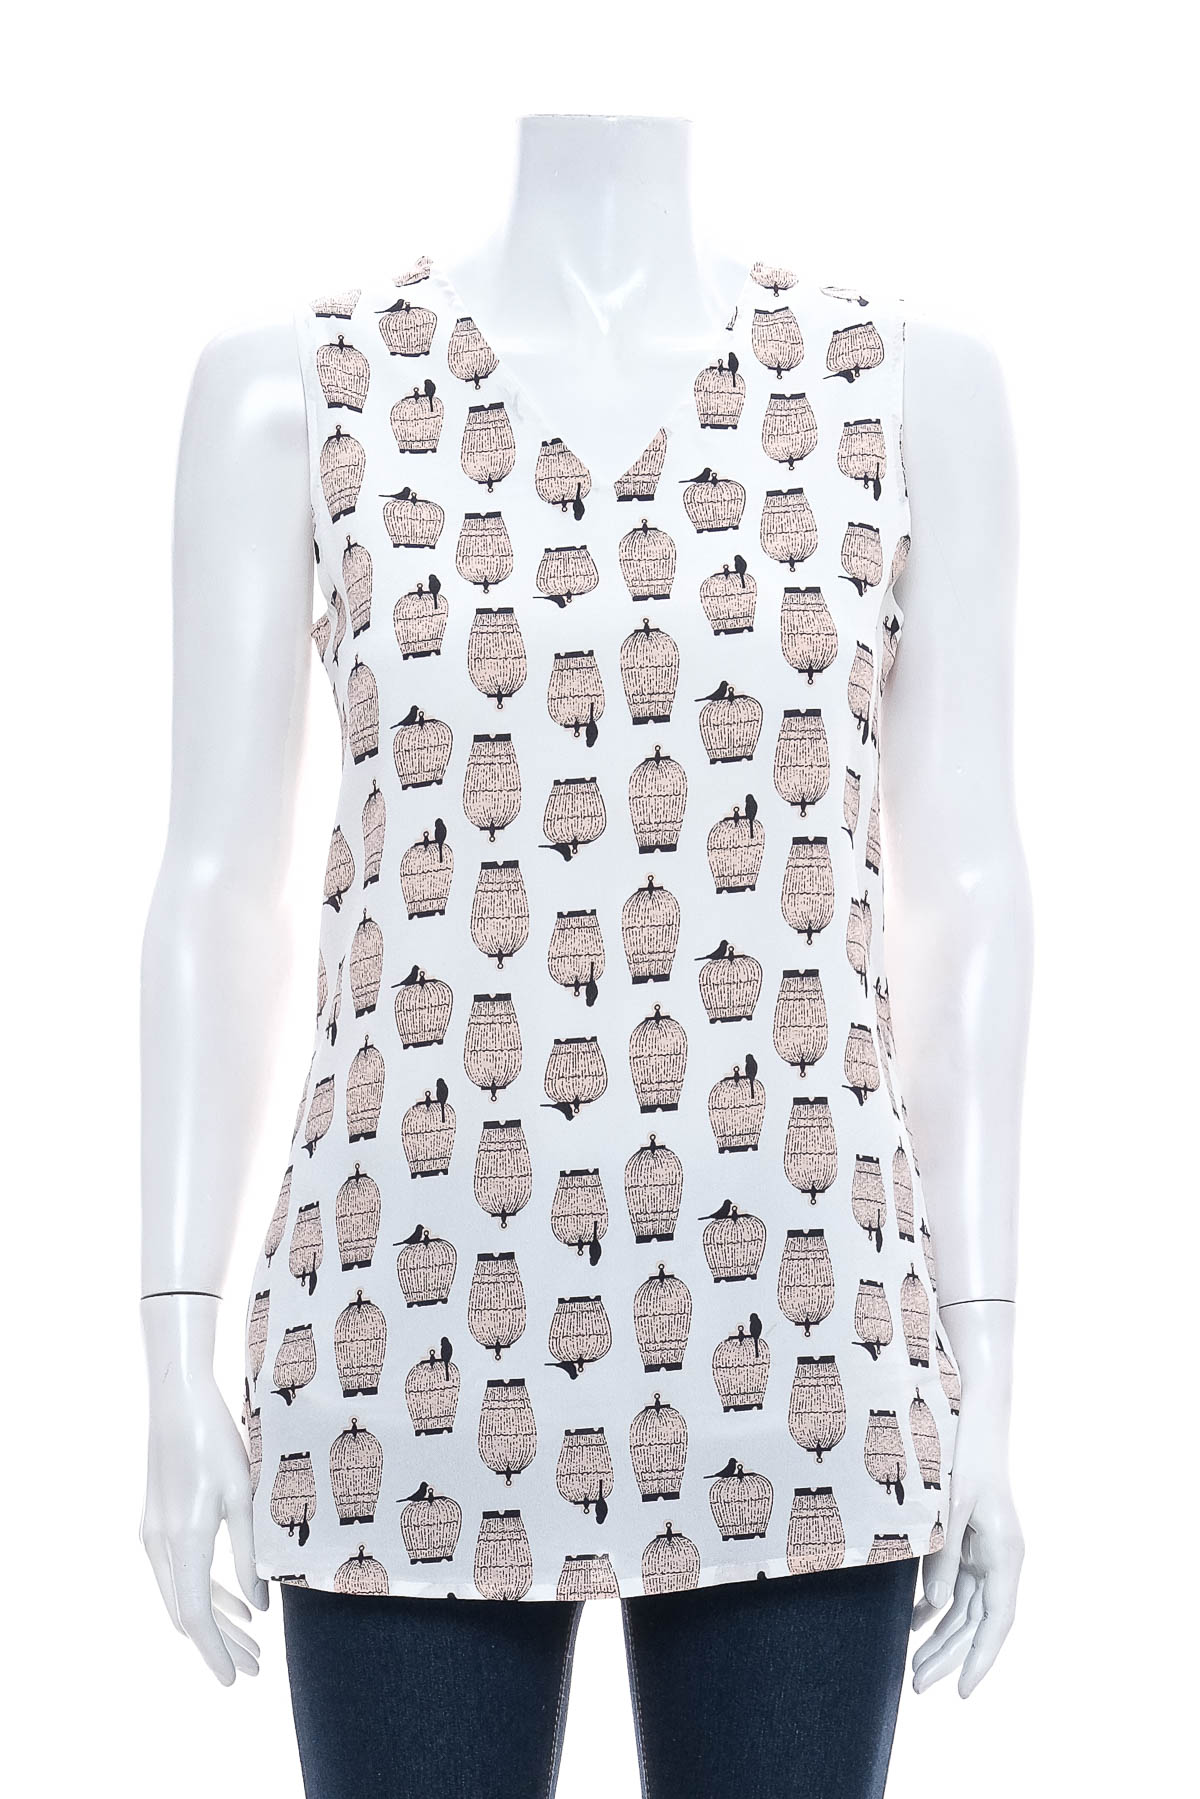 Γυναικείо πουκάμισο - Anonyme designers - 0